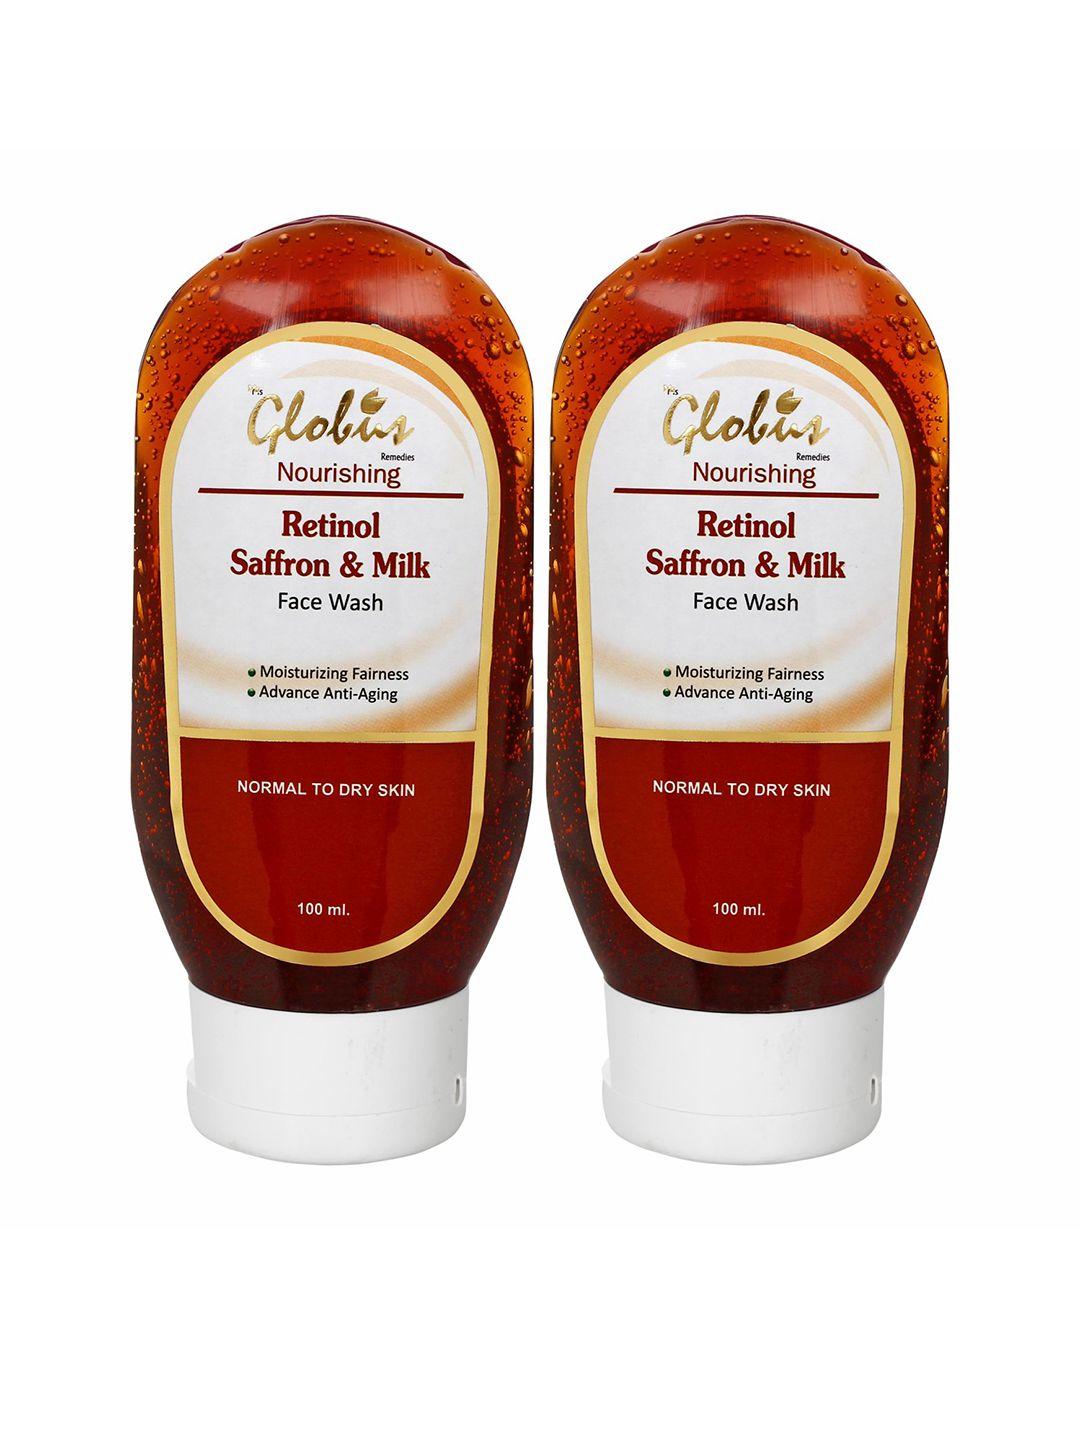 globus remedies set of 2 instant glow retinol face wash with saffron & milk - 100 ml each